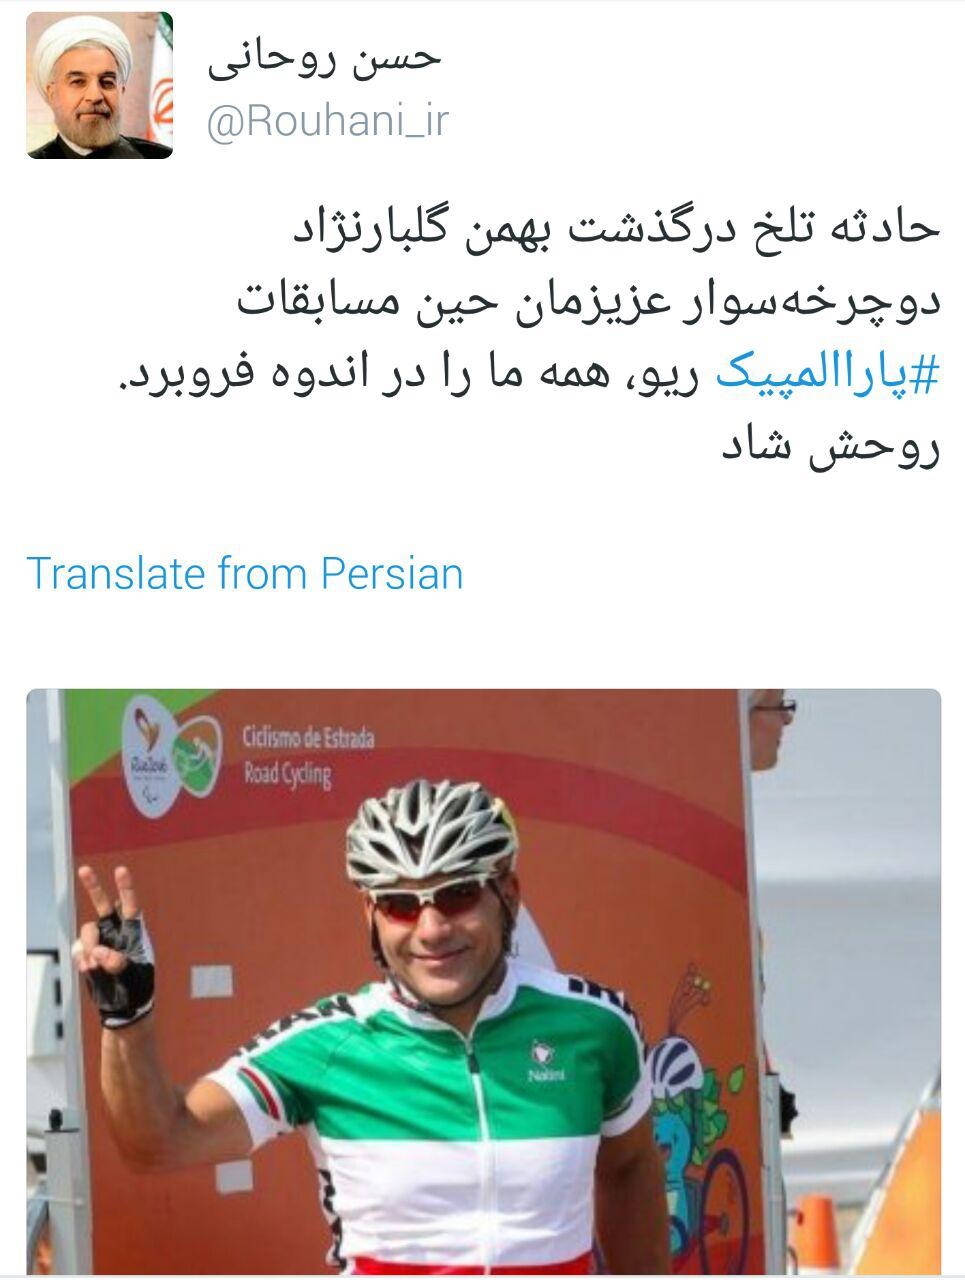 توییت روحانی از حادثه تلخ جانباز پارالمپیکی+عکس